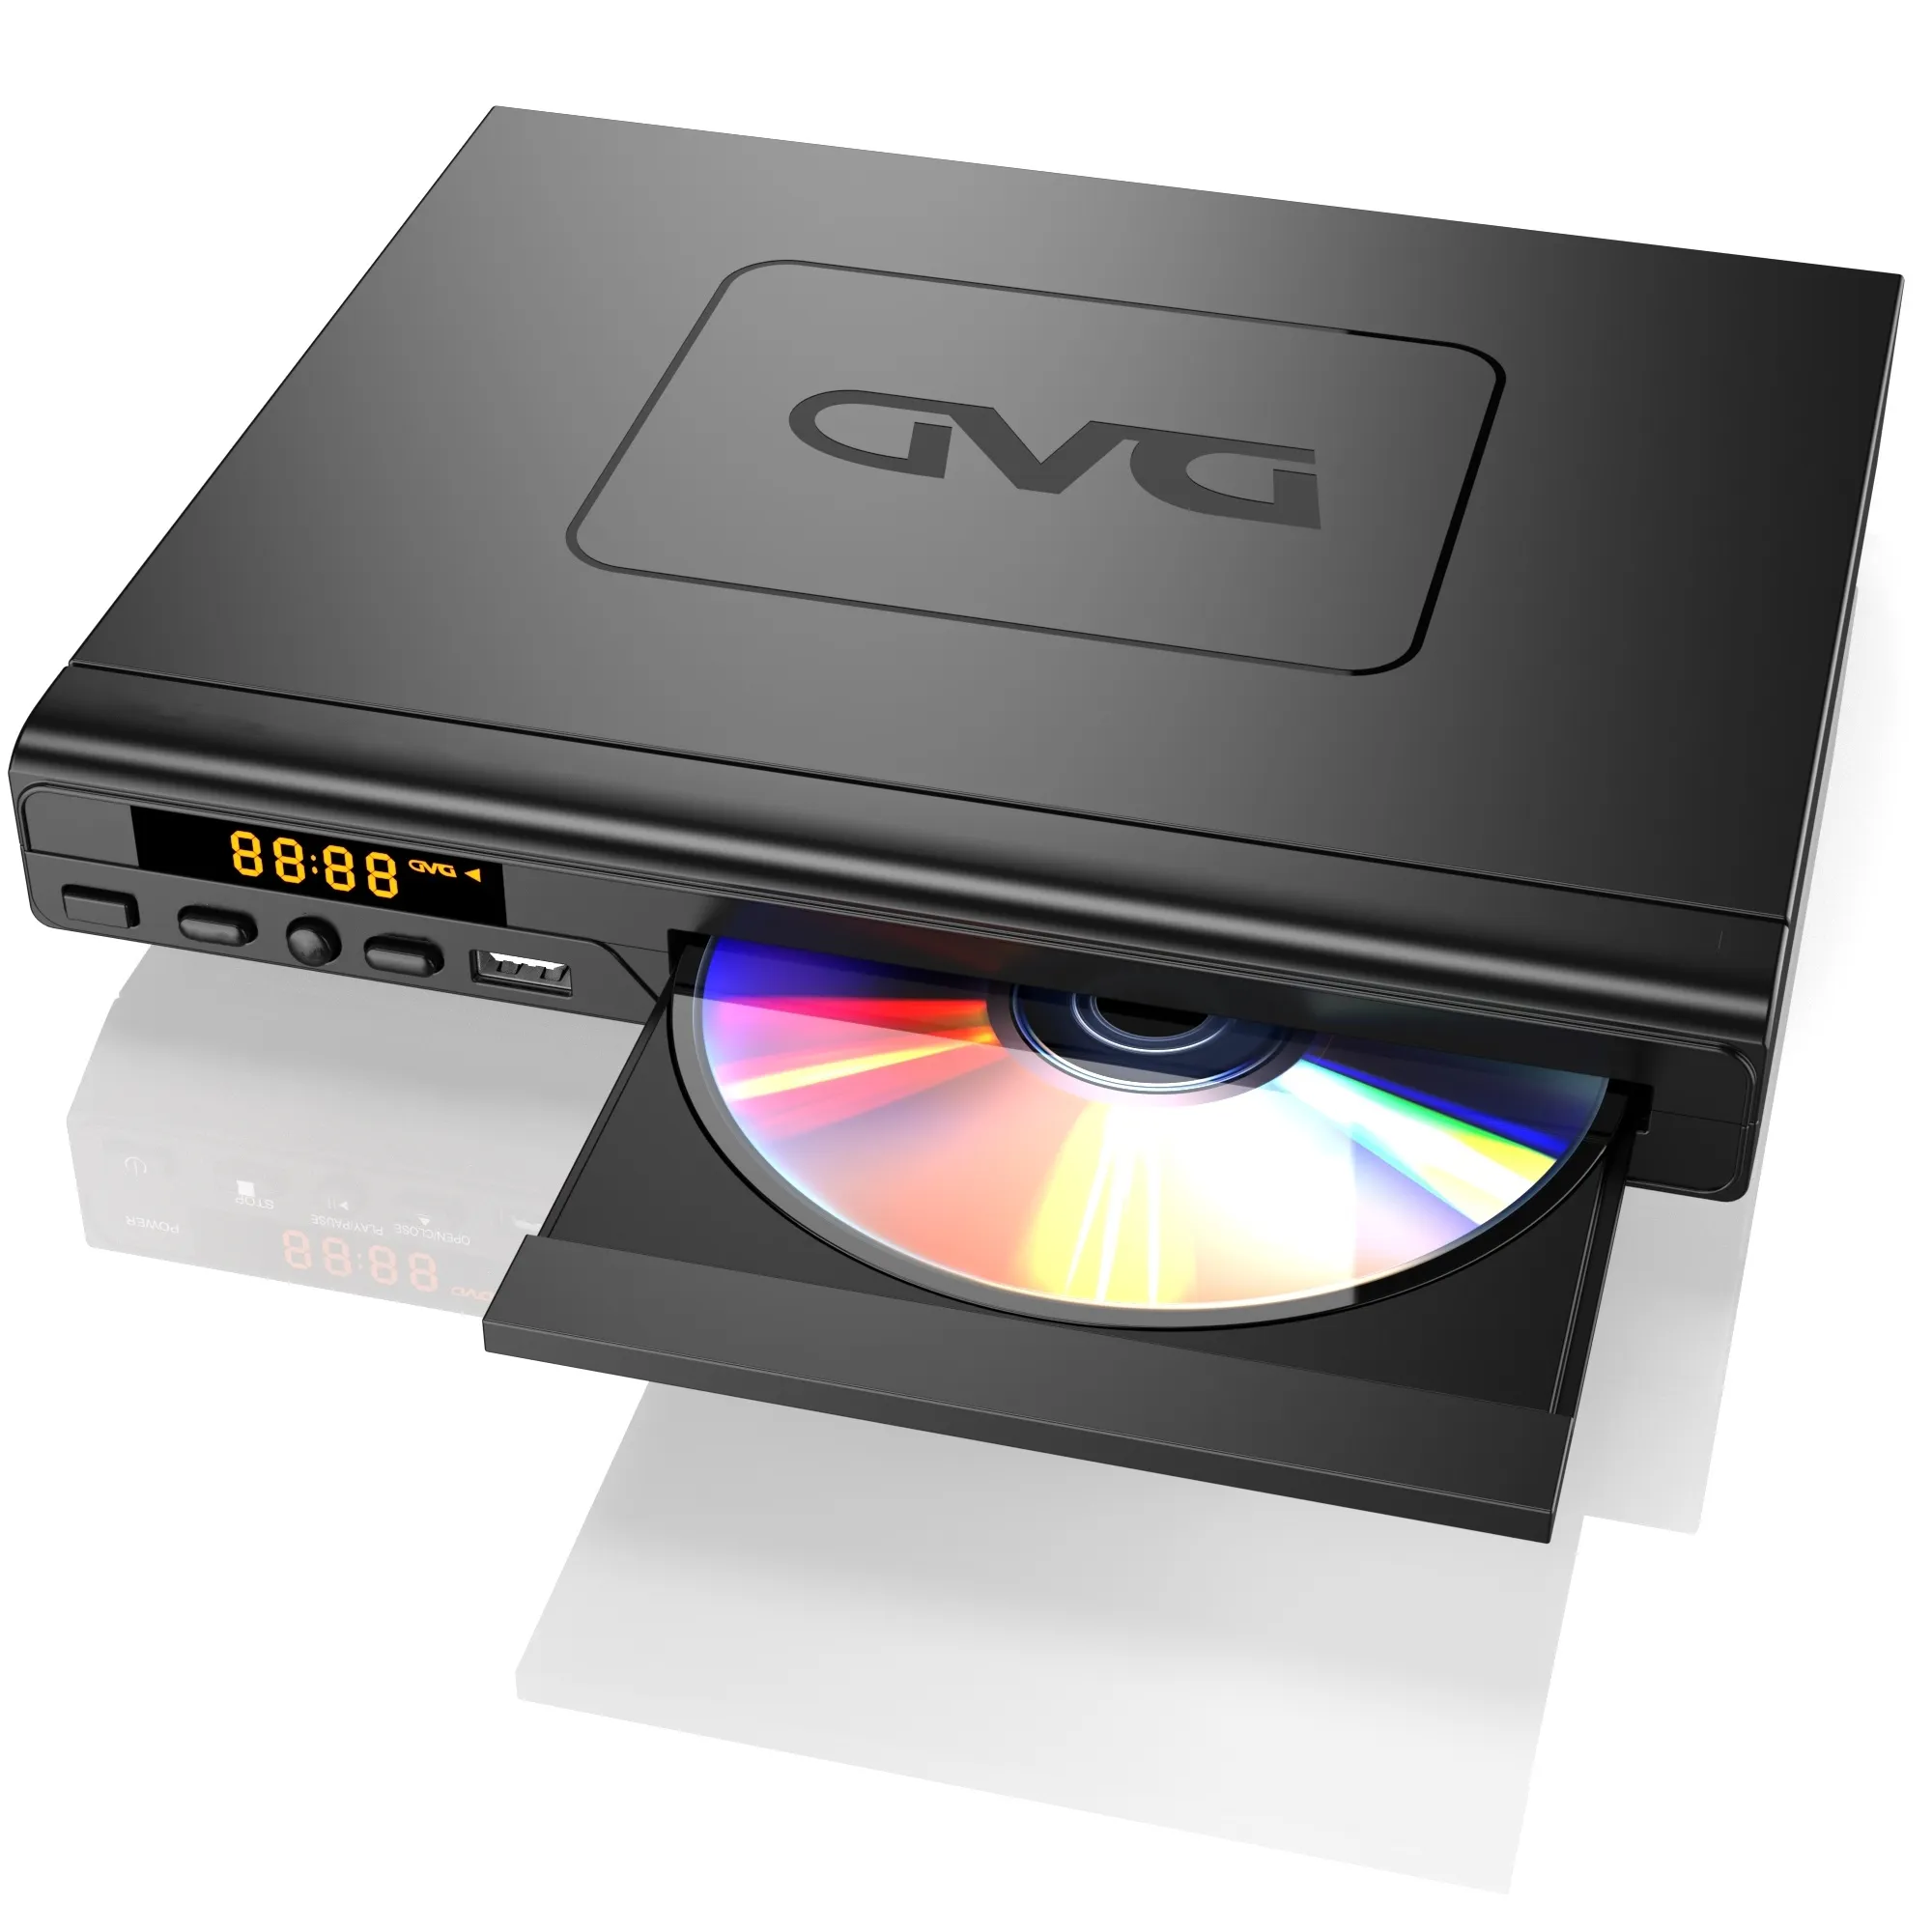 เครื่องเล่น DVD แบบ Full HD Zone เครื่องเล่น DVD/CD พร้อมช่องเสียบ USB และรีโมทคอนโทรล